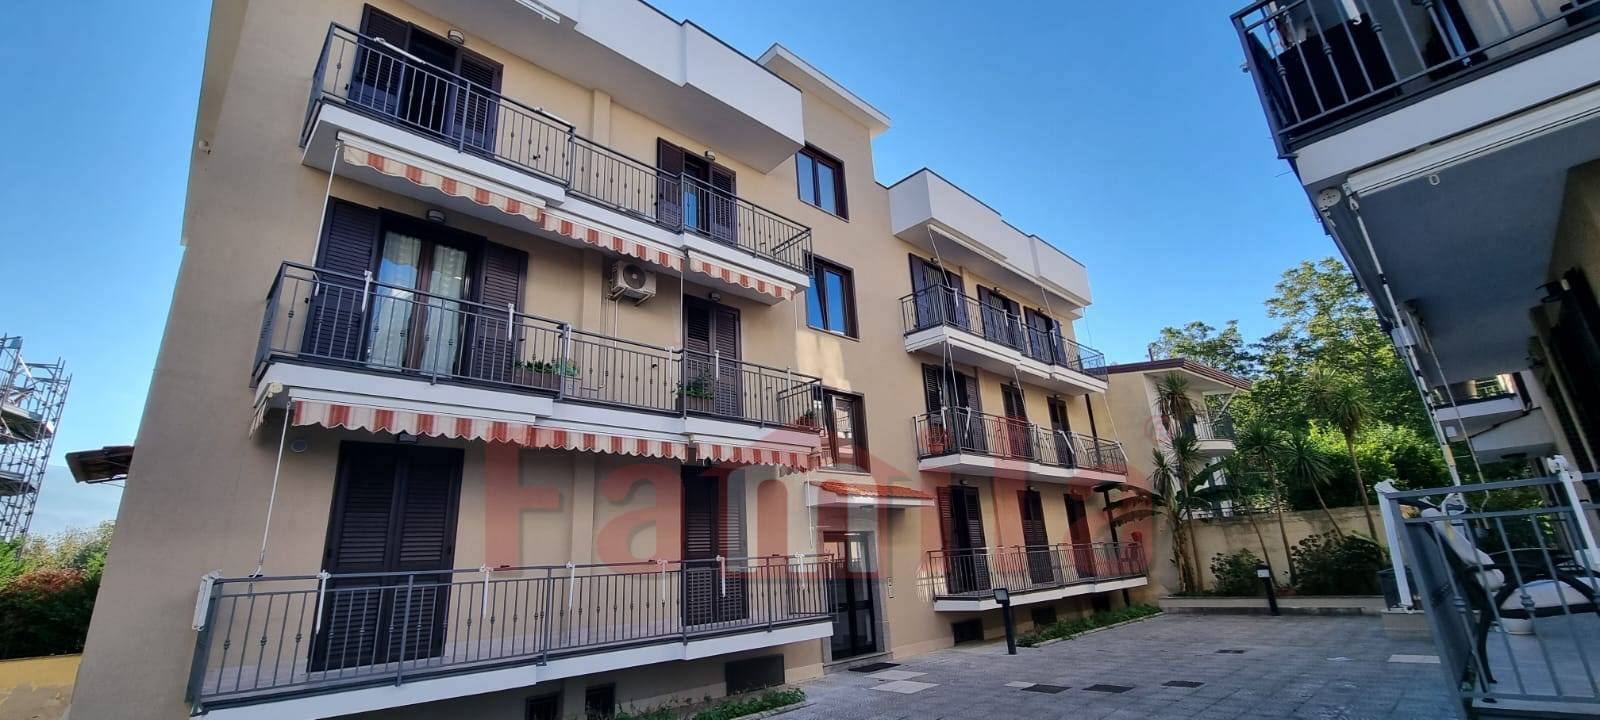 Appartamento in vendita a Sperone, 5 locali, prezzo € 145.000 | PortaleAgenzieImmobiliari.it